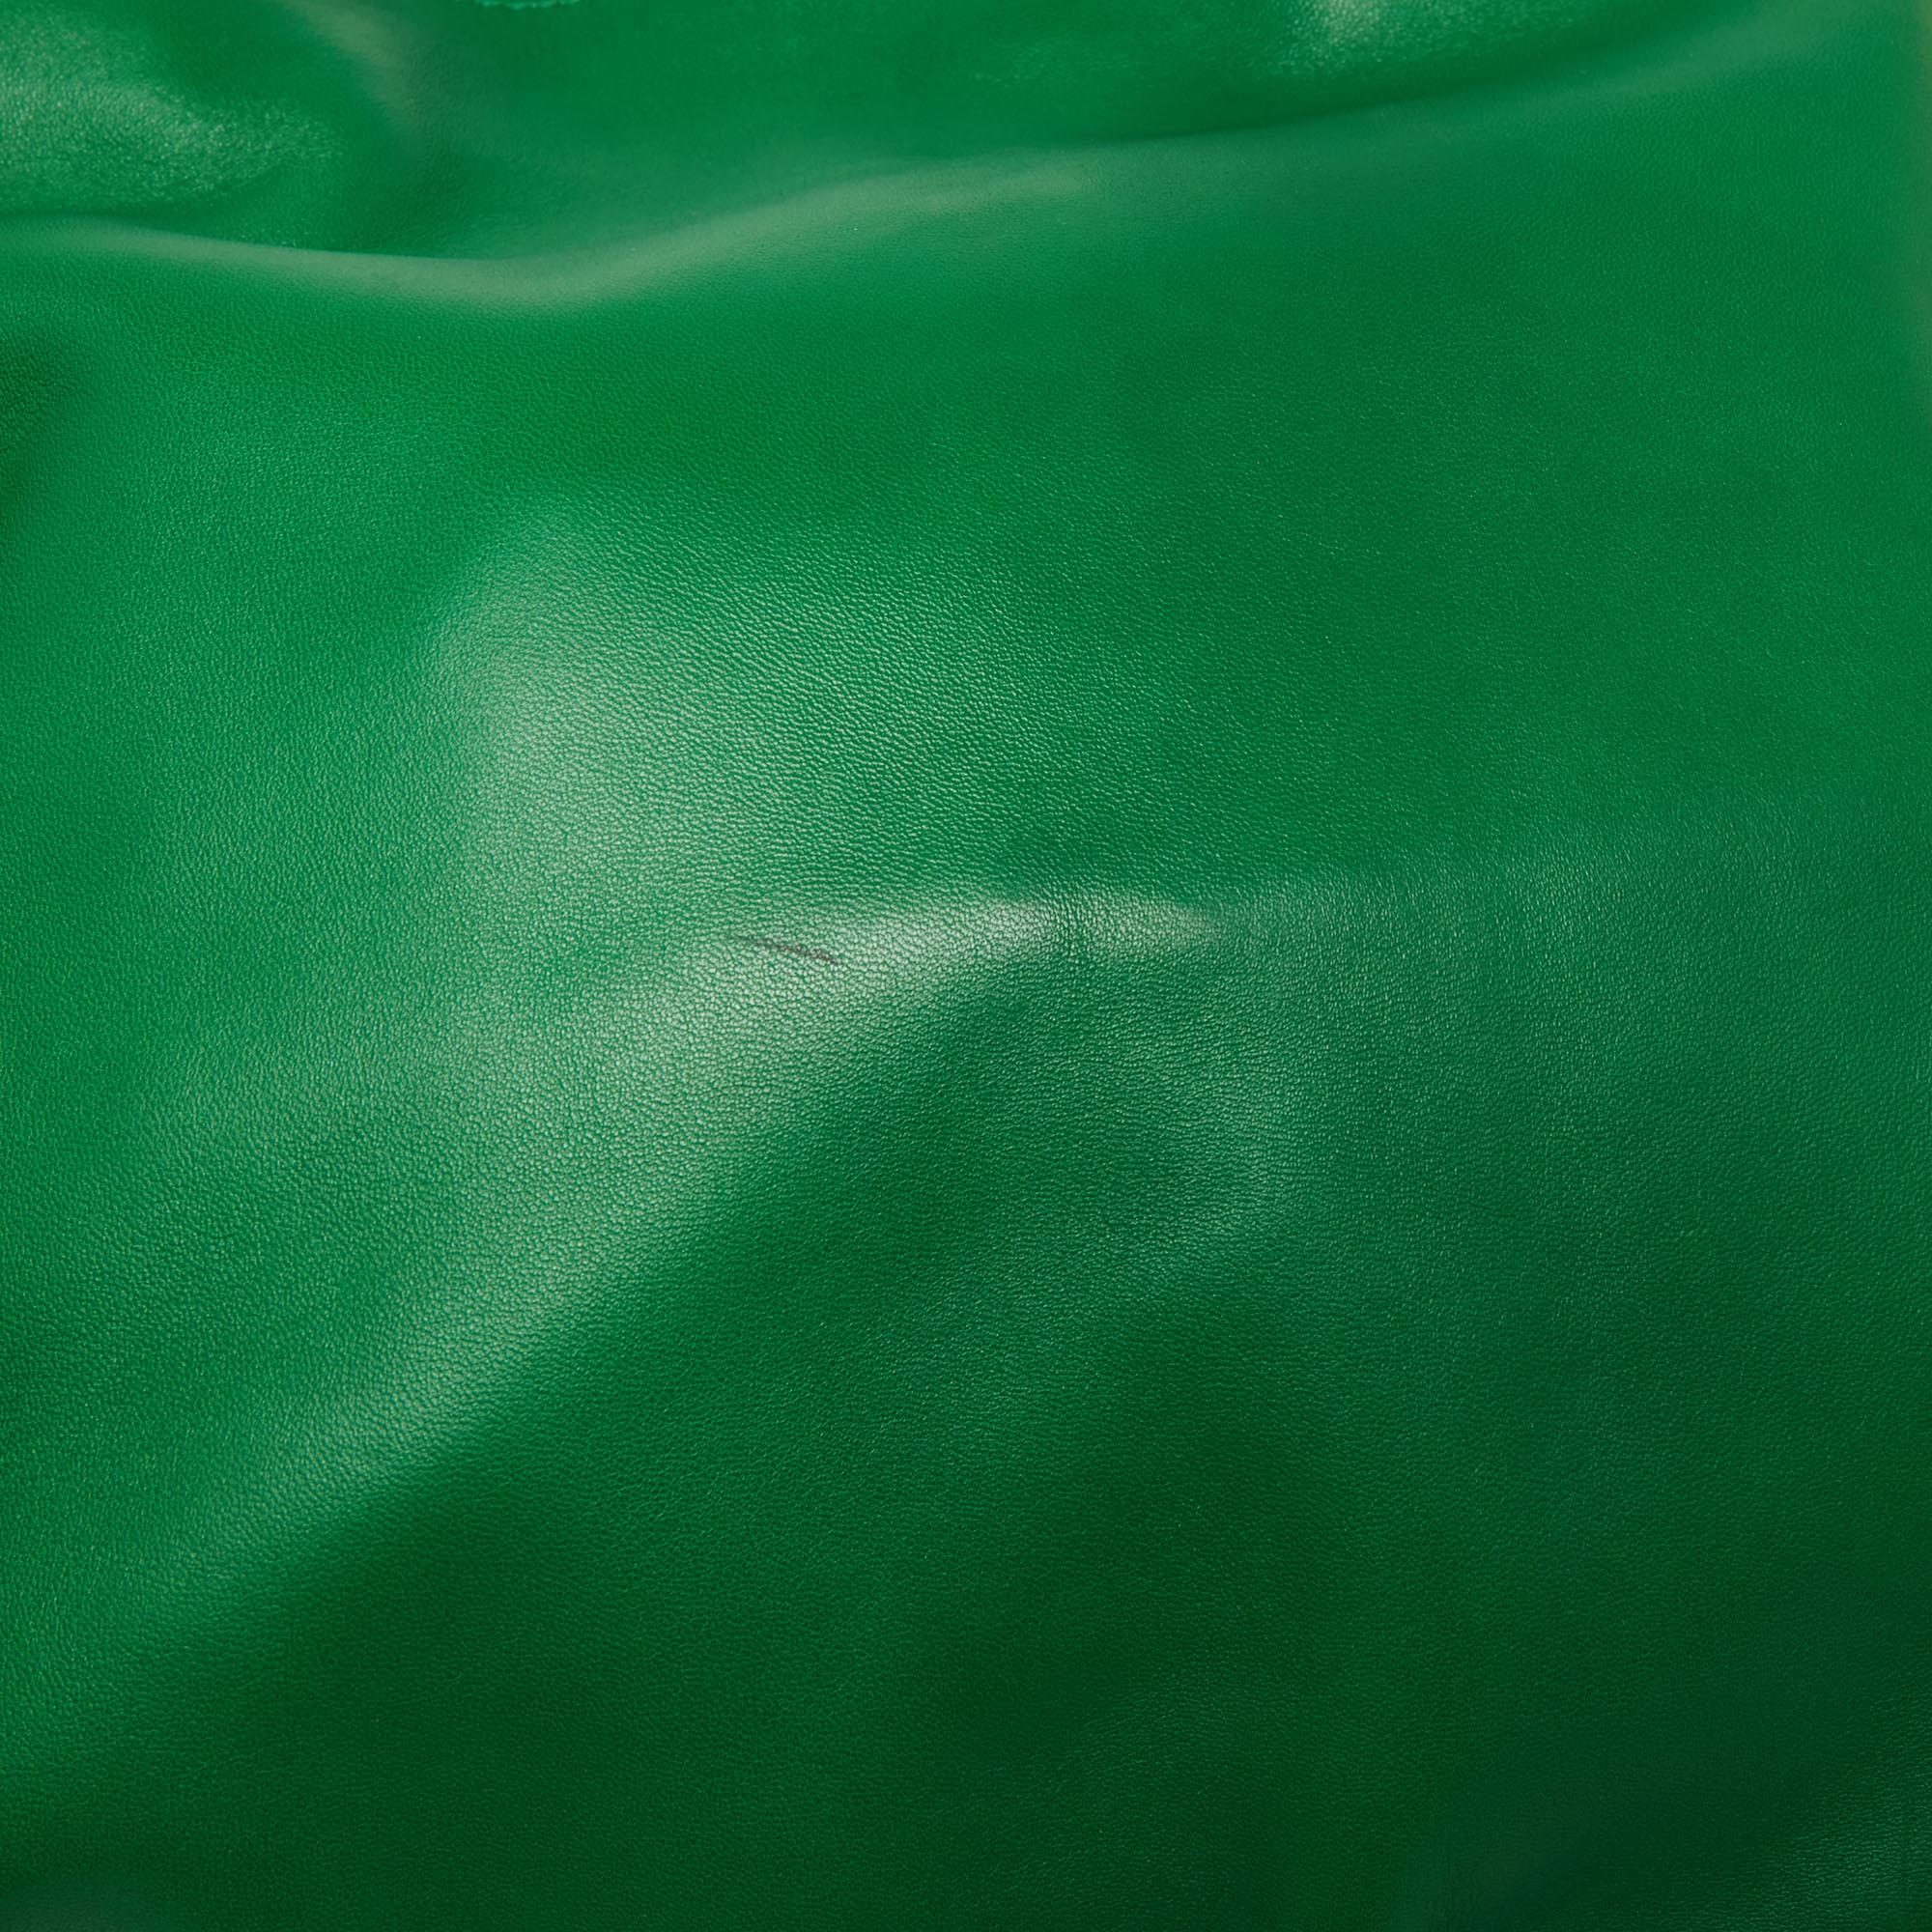 gucci green bag